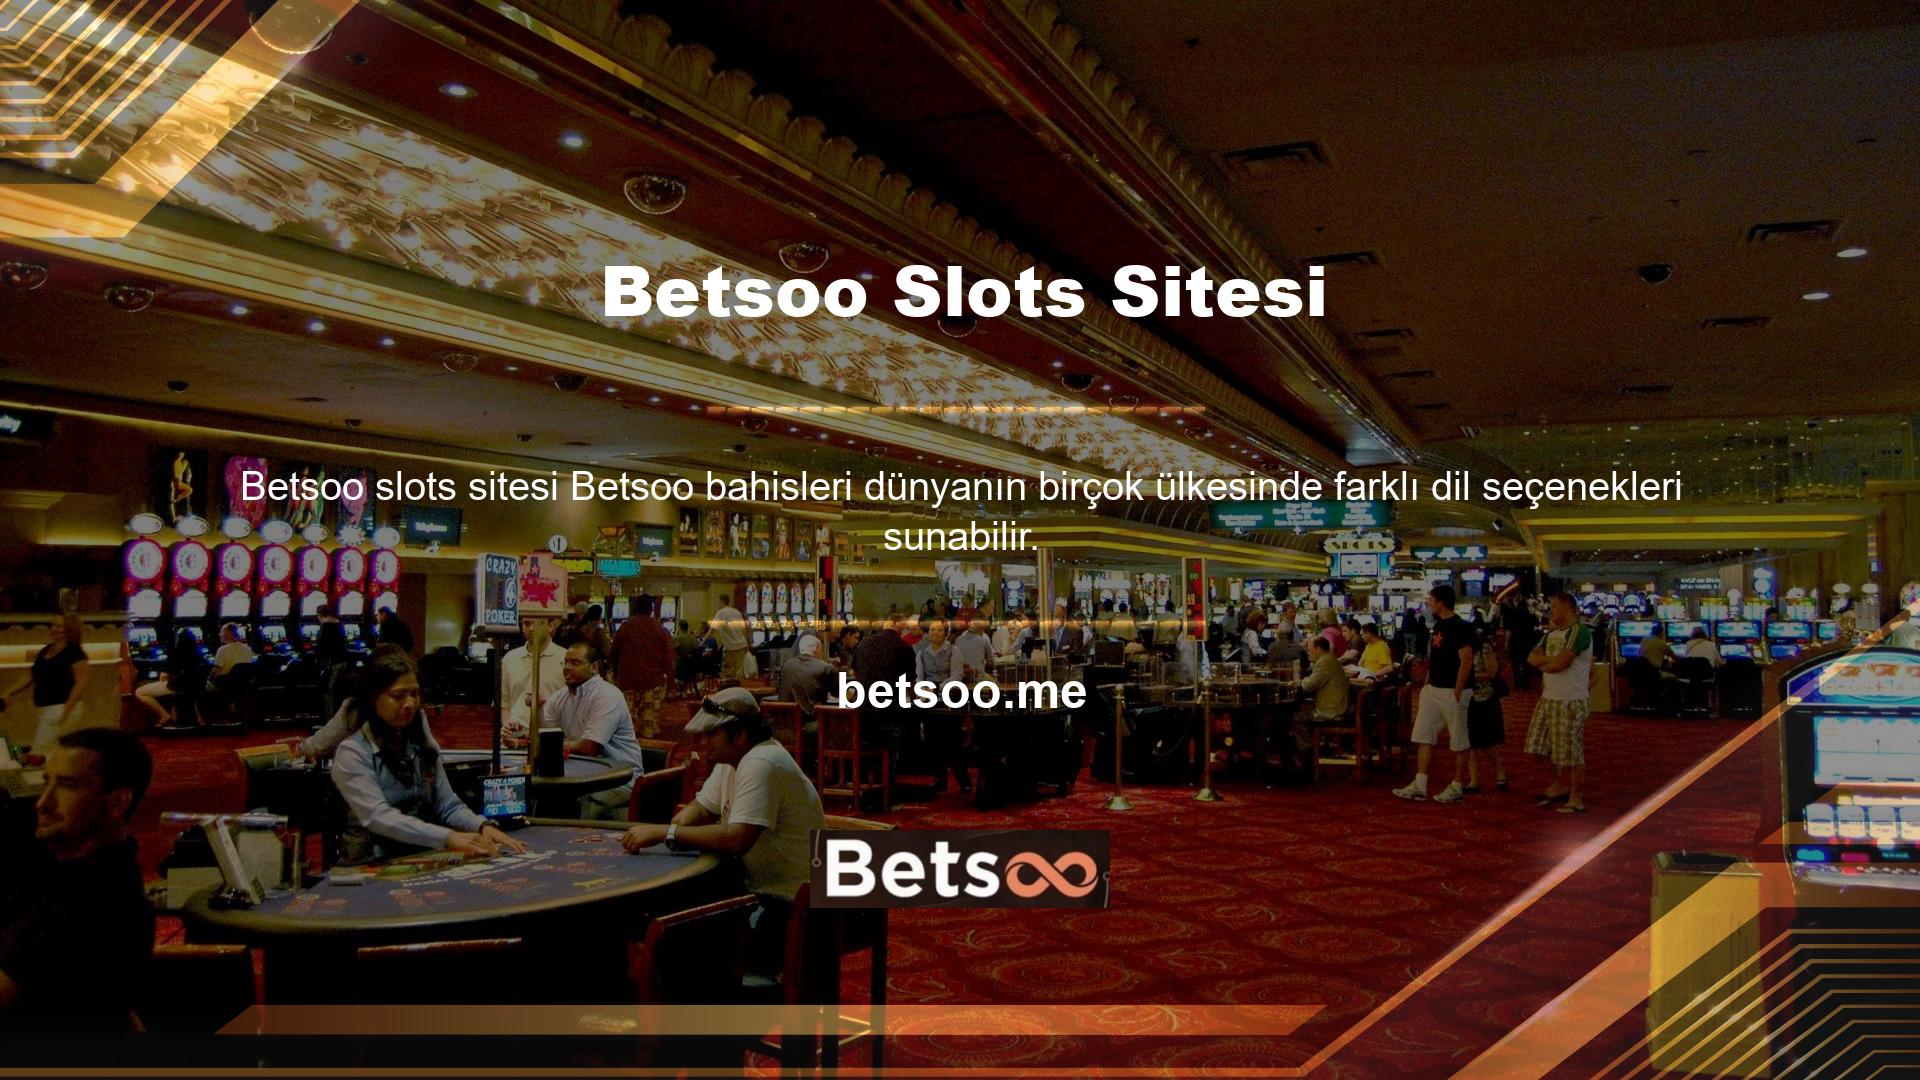 Betsoo sitesinde oyun oynamak isteyen lisans sahipleri online üyelik oluşturabilirler